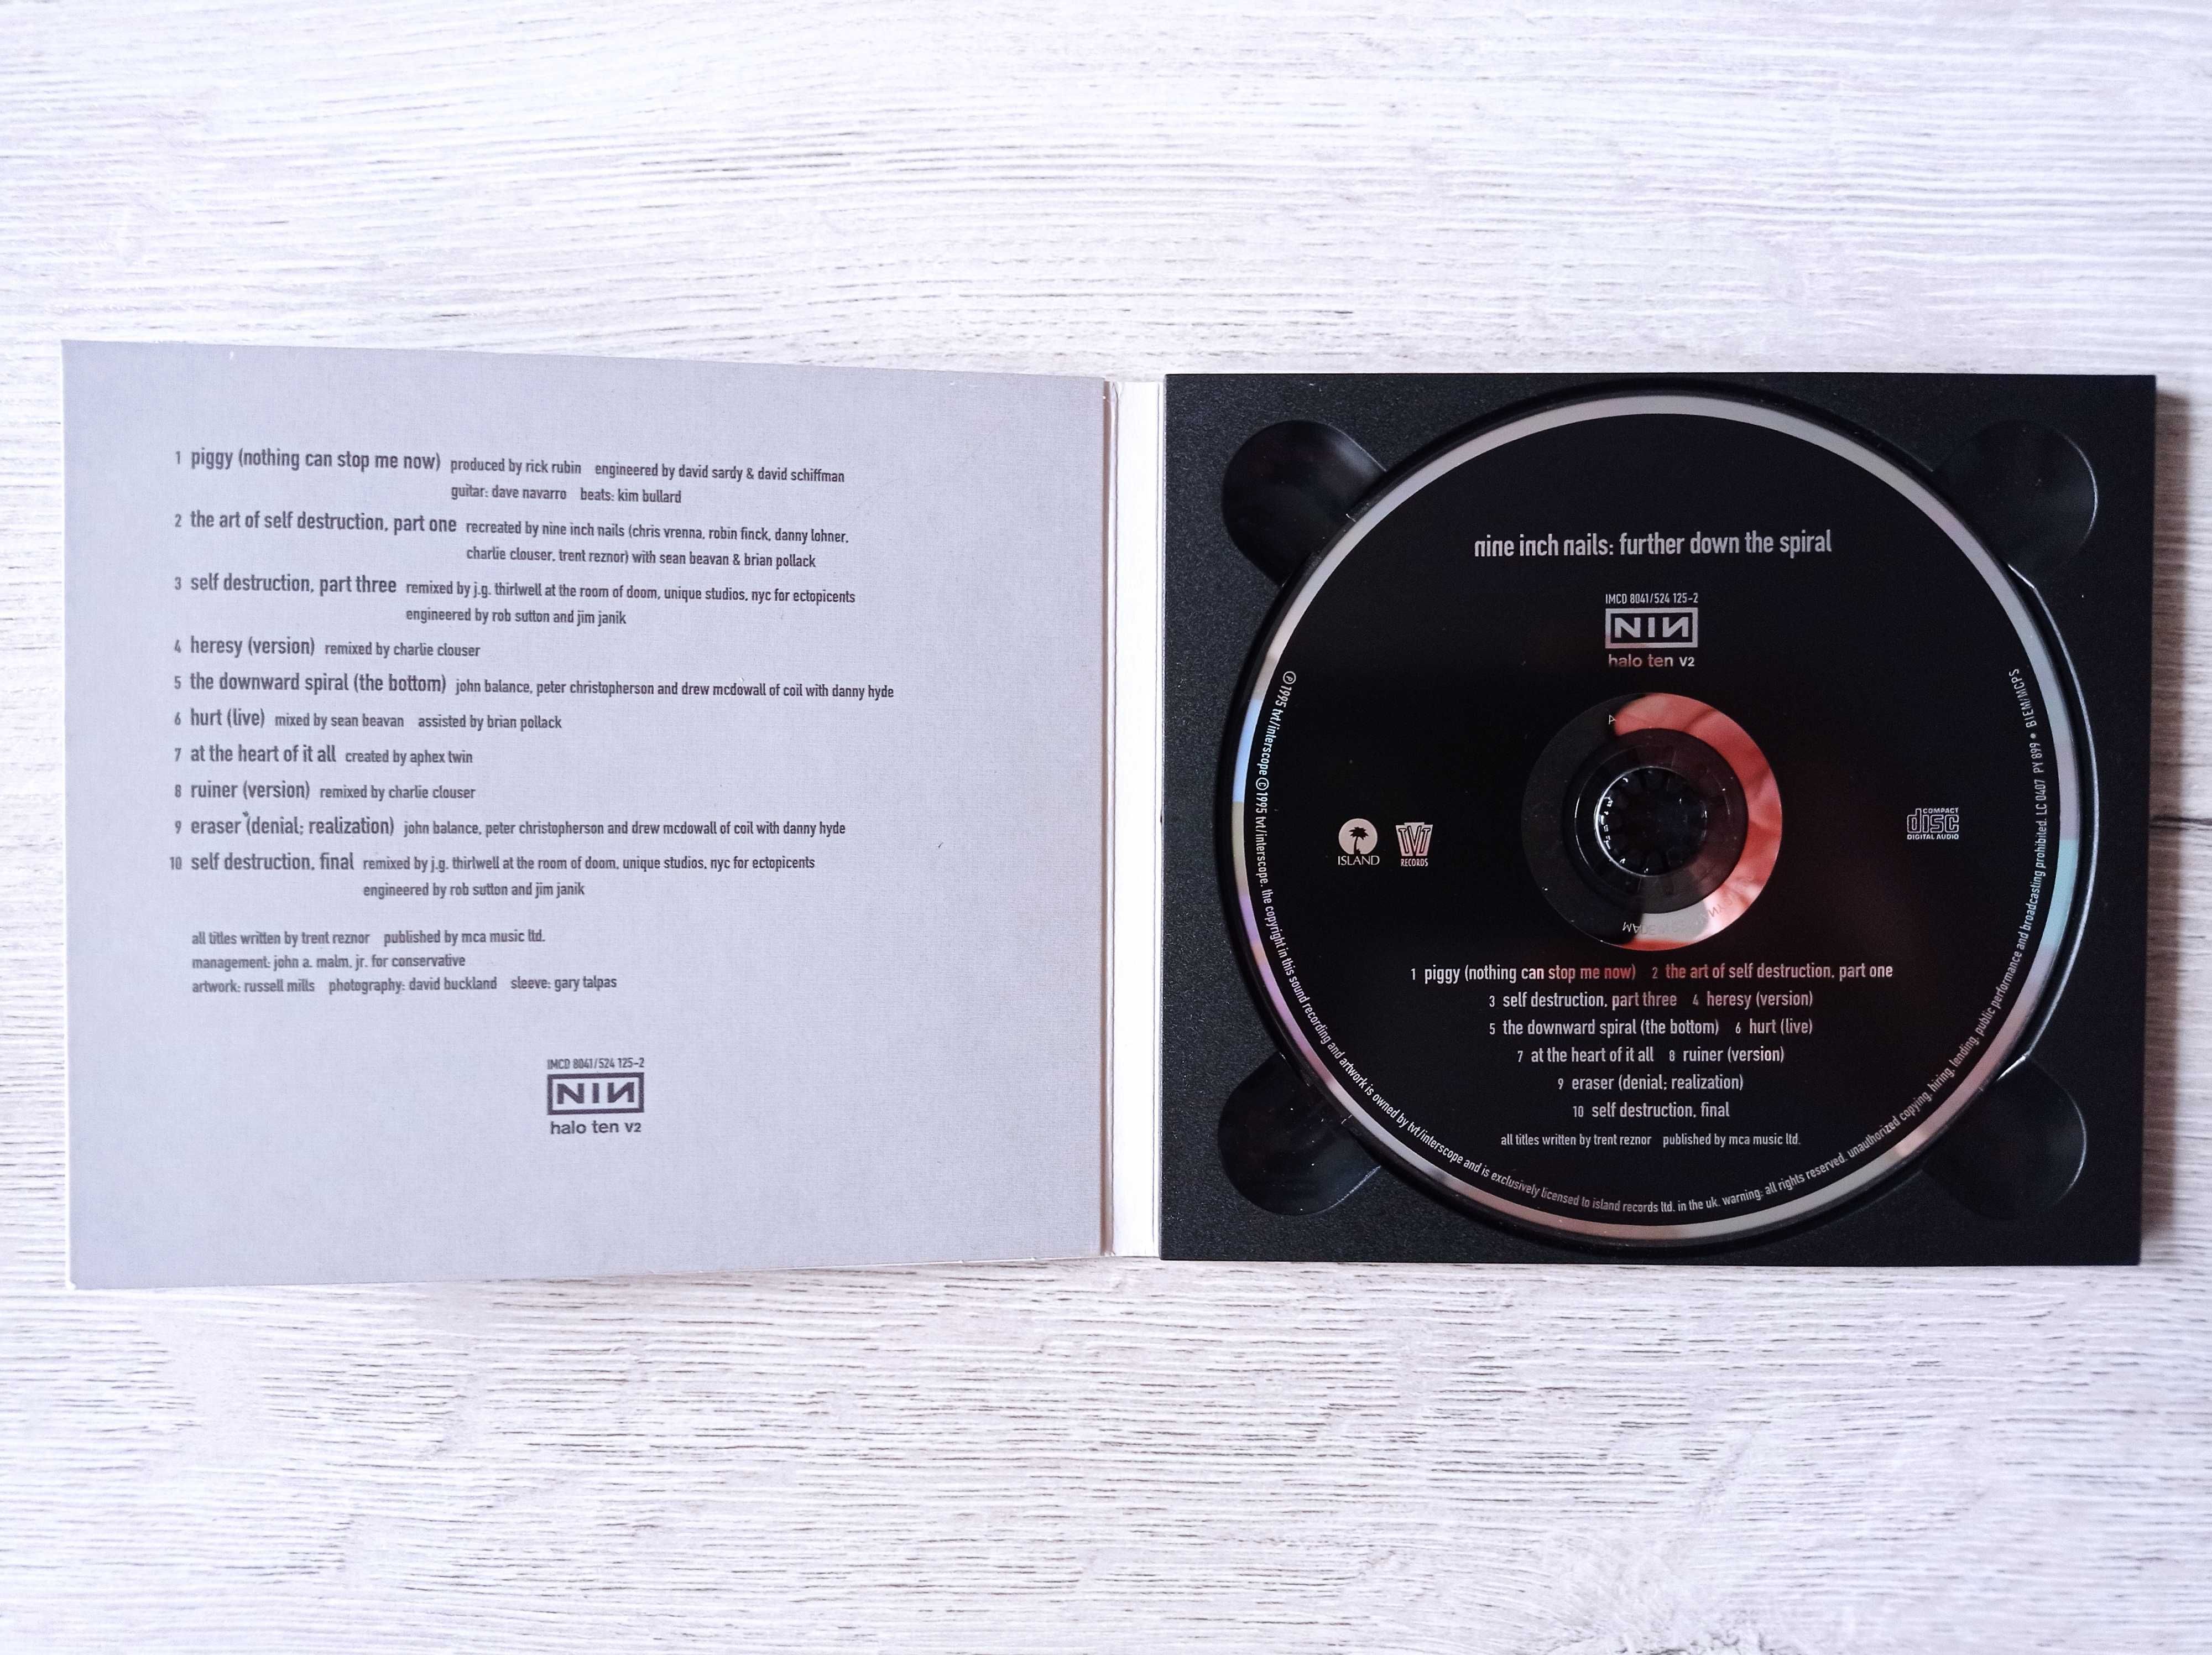 Nine Inch Nails – Further Down The Spiral - cd - wyprzedaż kolekcji